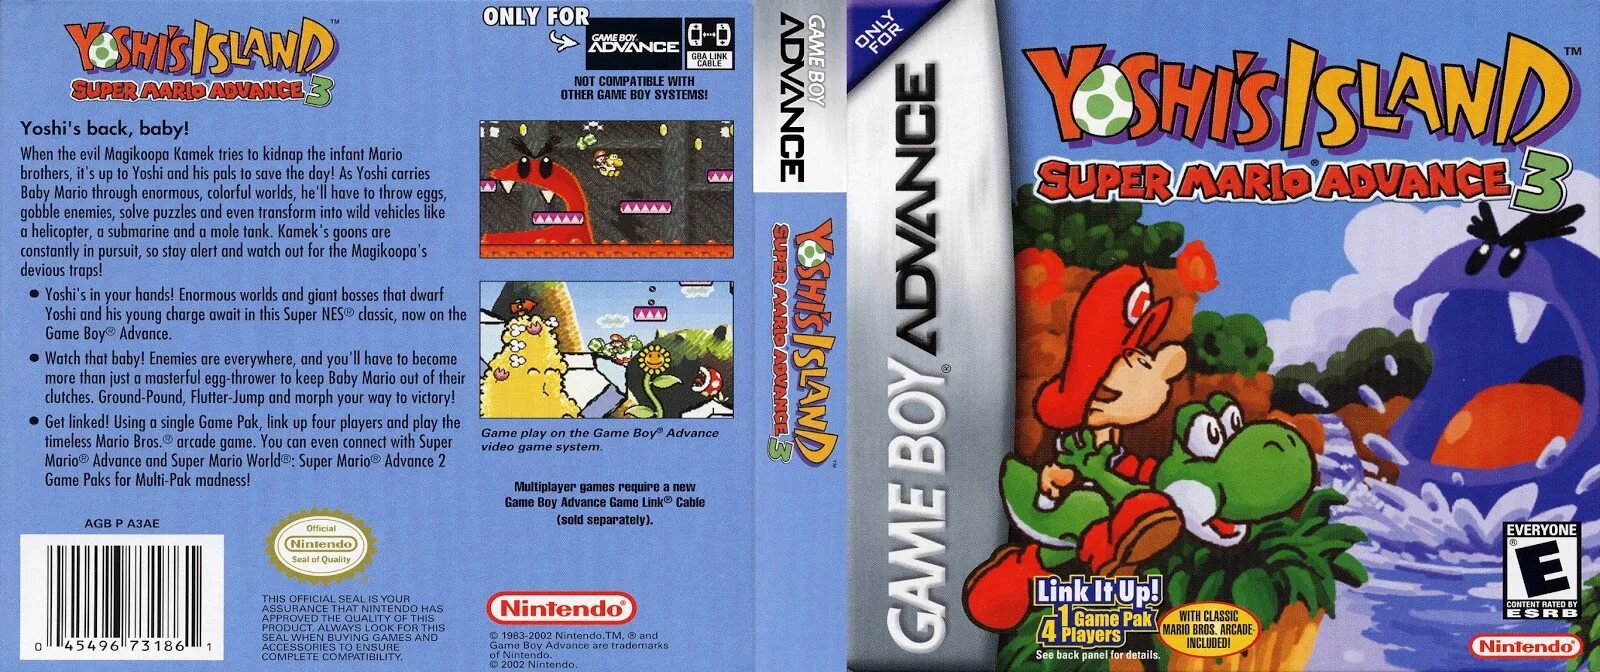 Super Mario Advance 3 - Yoshi's Island GBA. GBA super Mario Advance 3. Super Mario World 2 - Yoshi's Island Snes. GBA: super Mario Advance Cover.